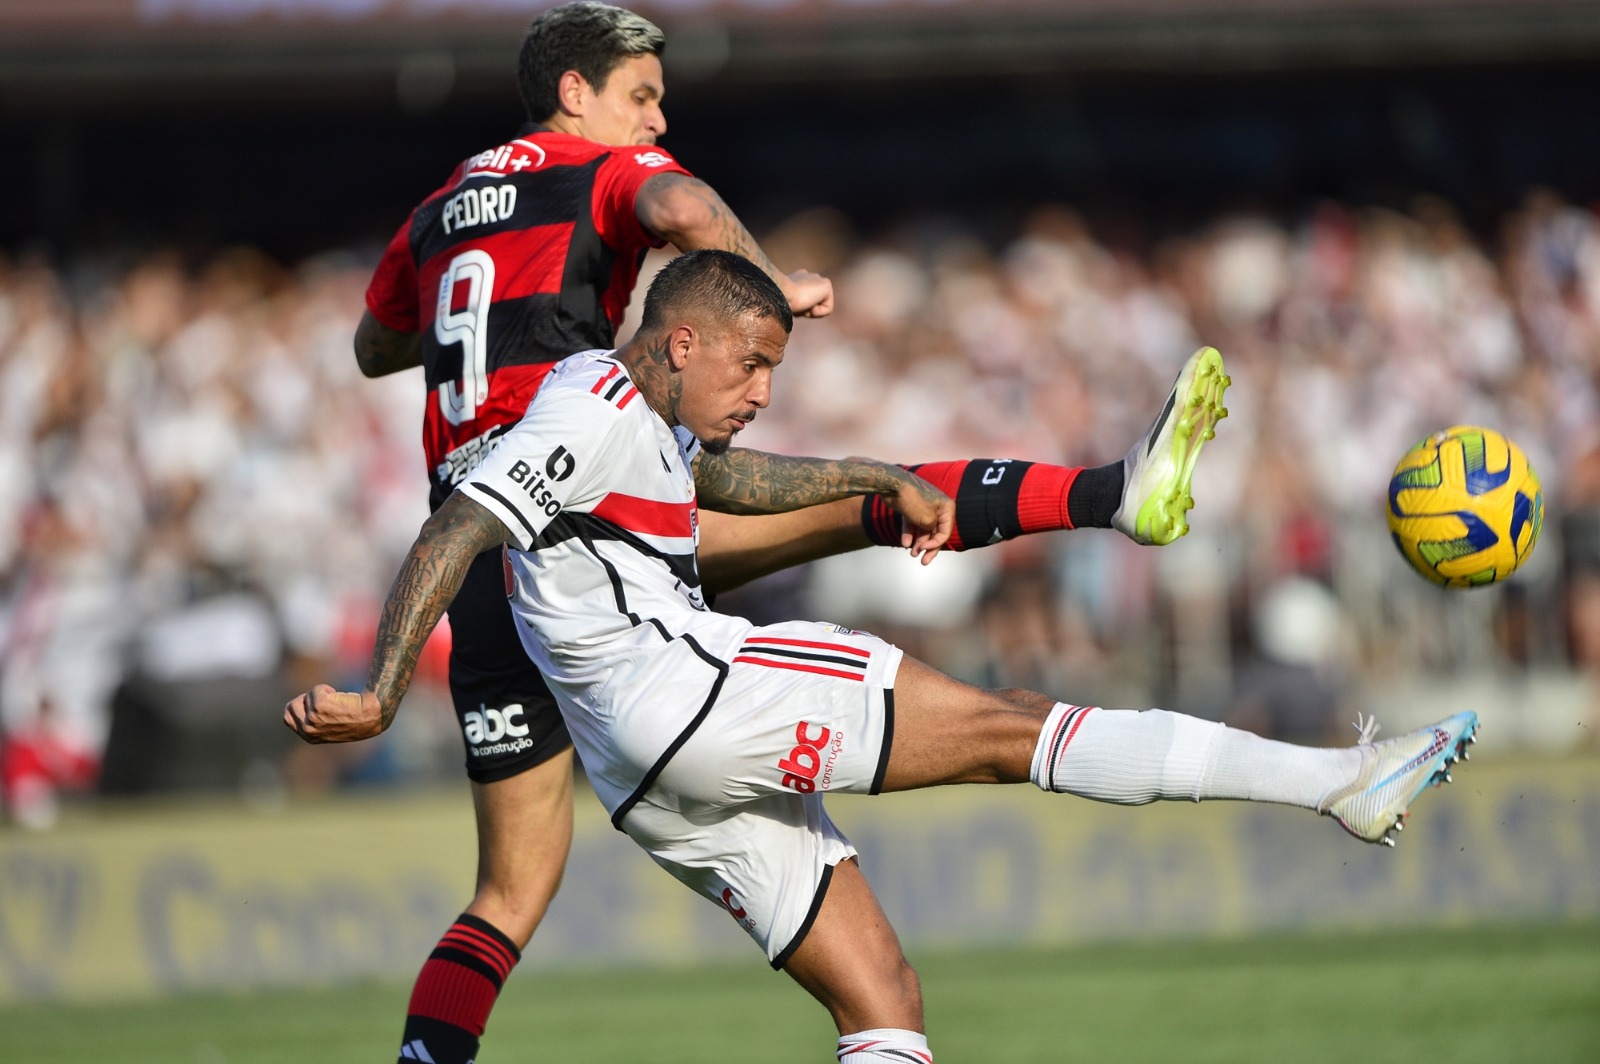 Clássico entre Atlético e Flamengo tem ativação do ABC da Construção